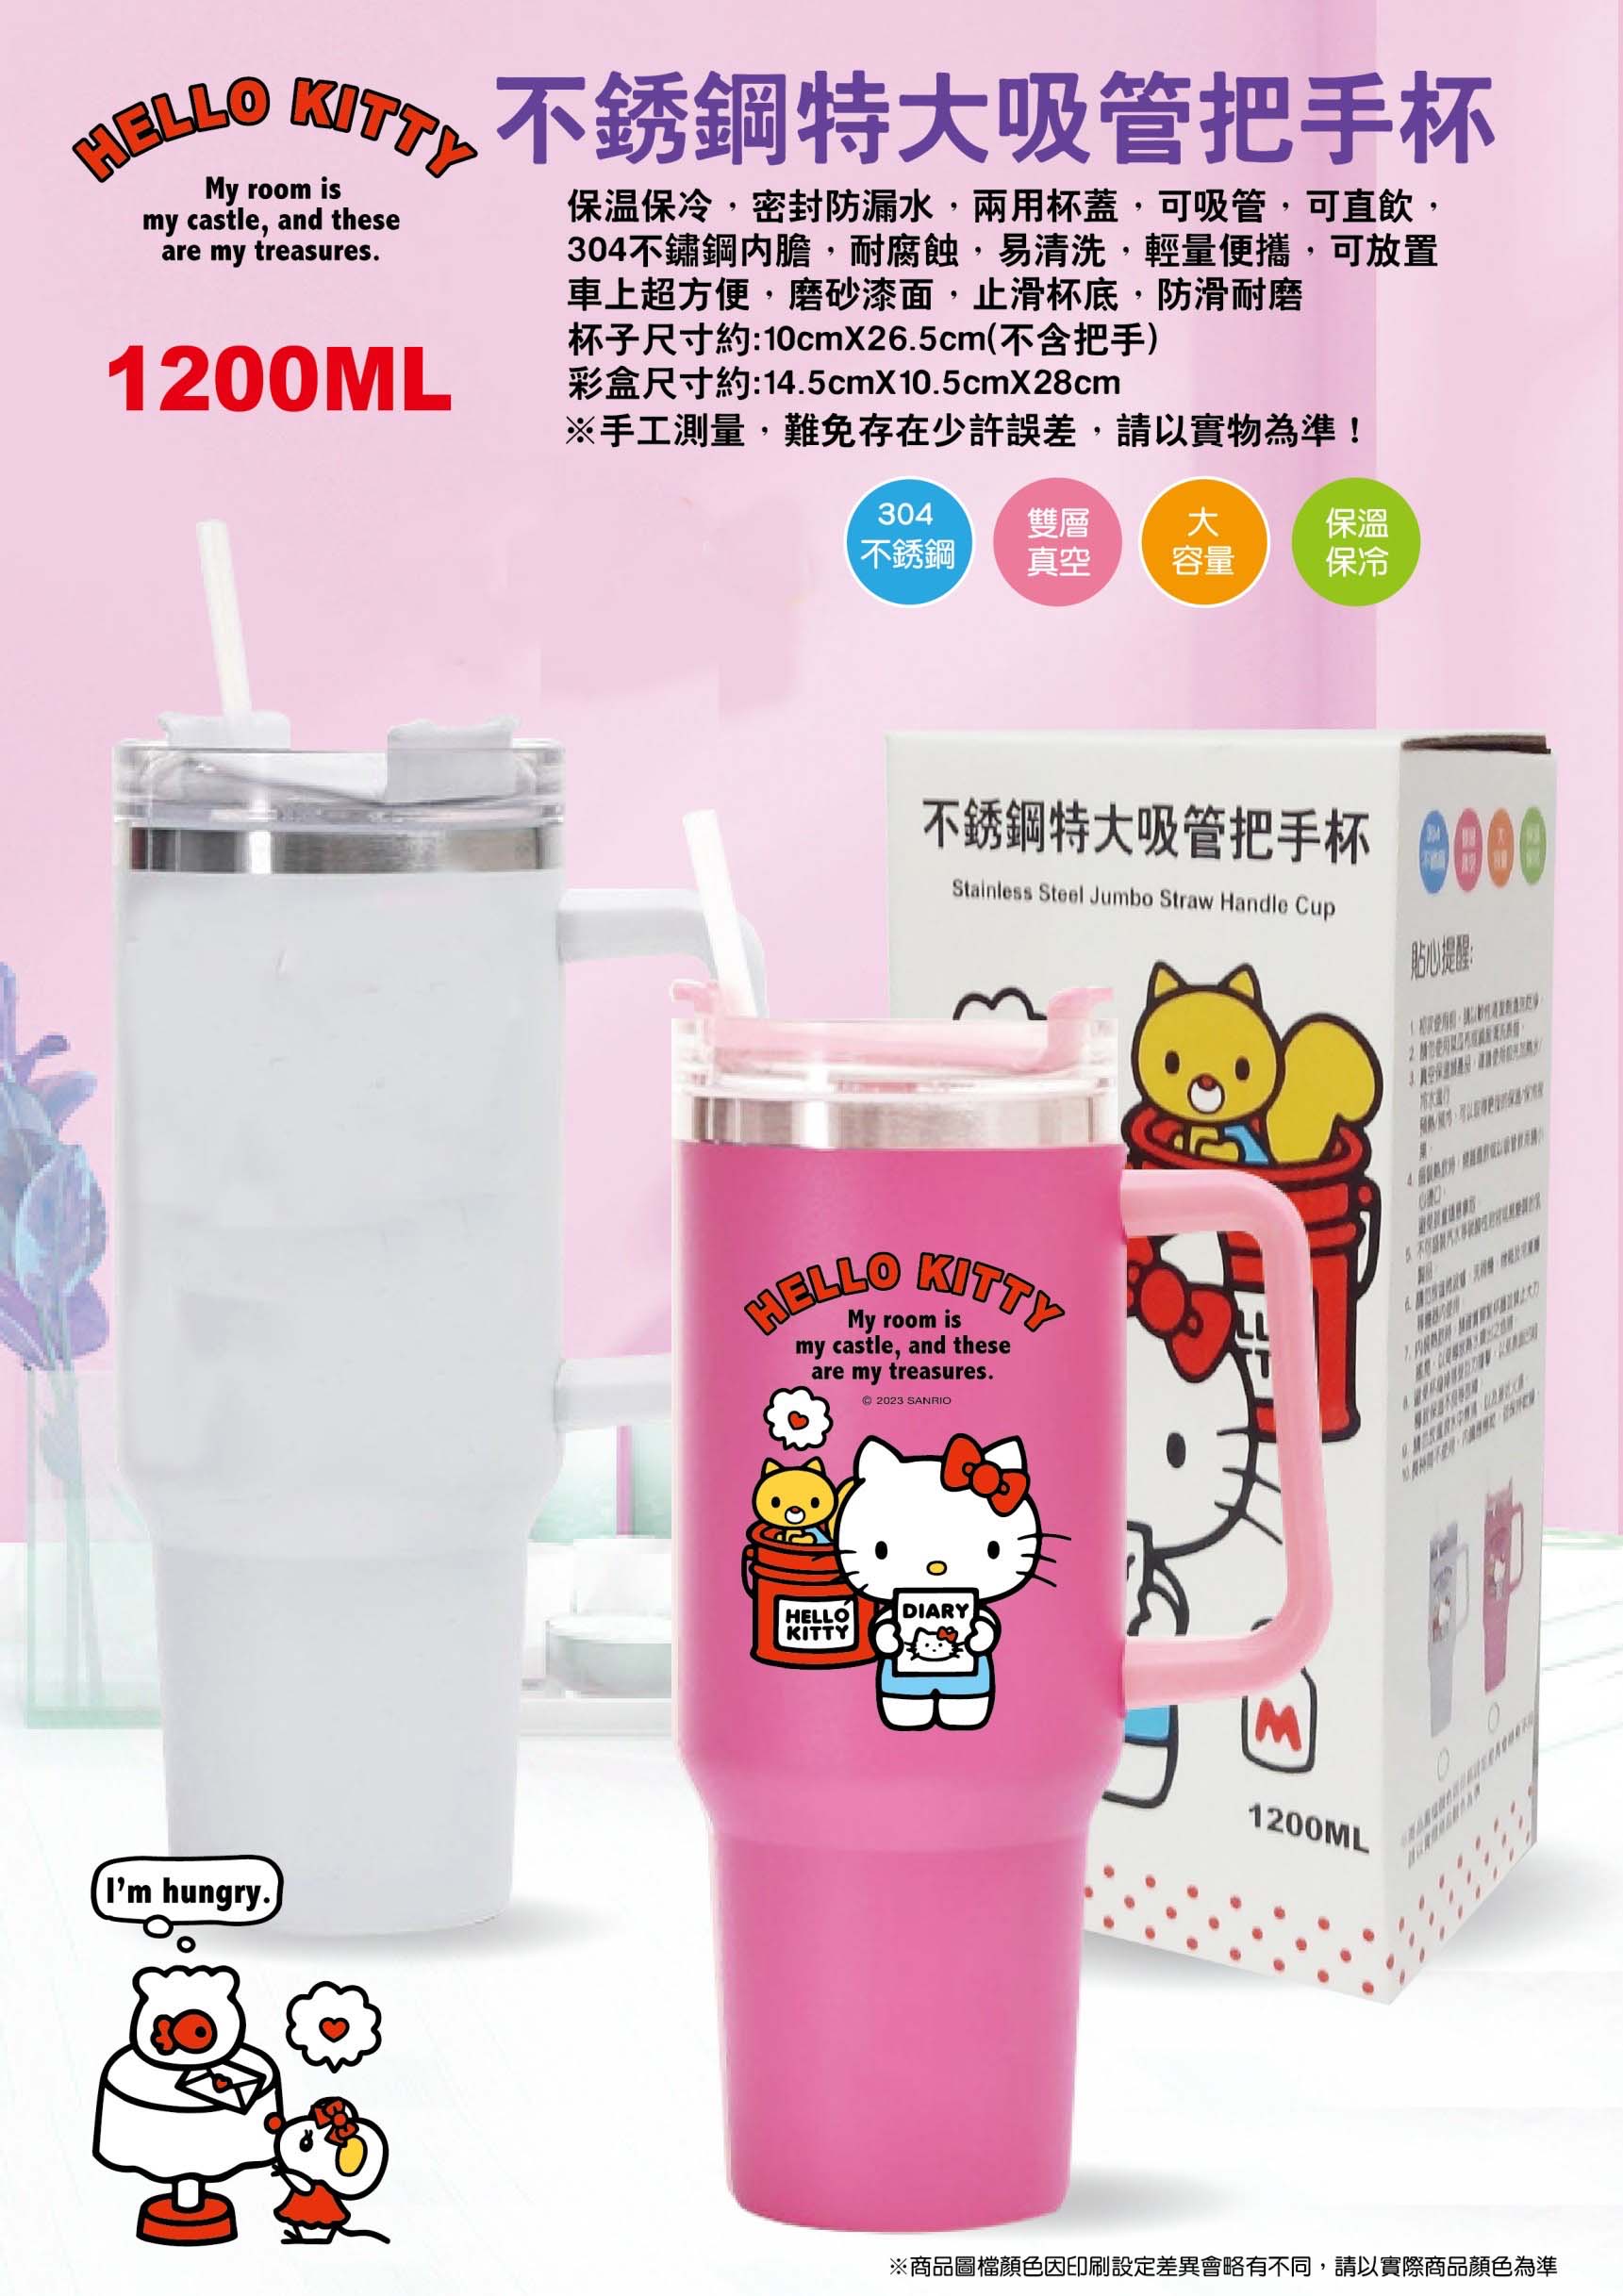 不鏽鋼特大吸管把手杯 1200ml-凱蒂貓 HELLO KITTY 三麗鷗 Sanrio 正版授權